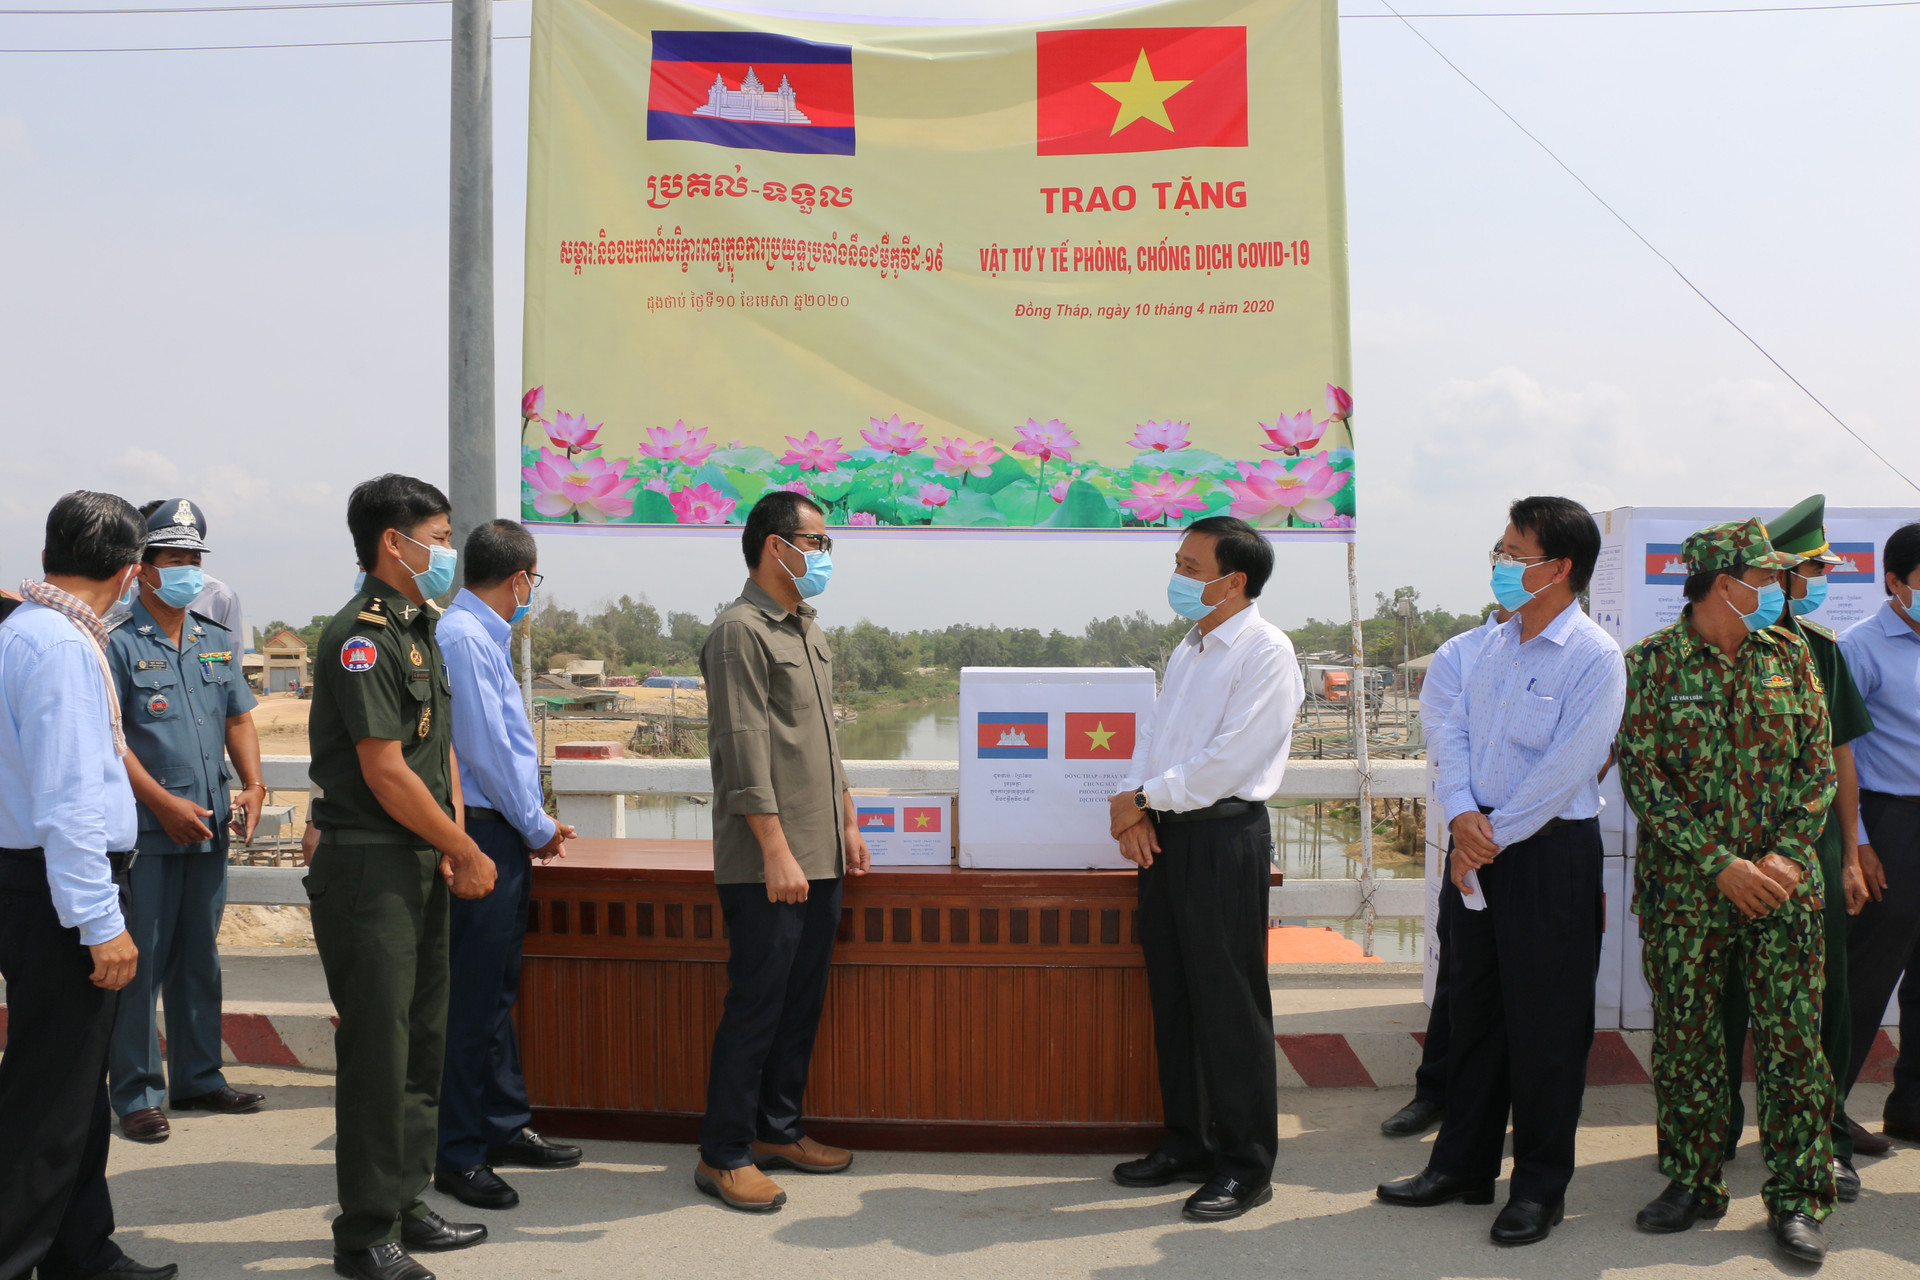 Đồng Tháp trao tặng tỉnh Prây Veng (Vương quốc Campuchia) hàng ngàn vật tư y tế chống Covid-19 - Ảnh 2.